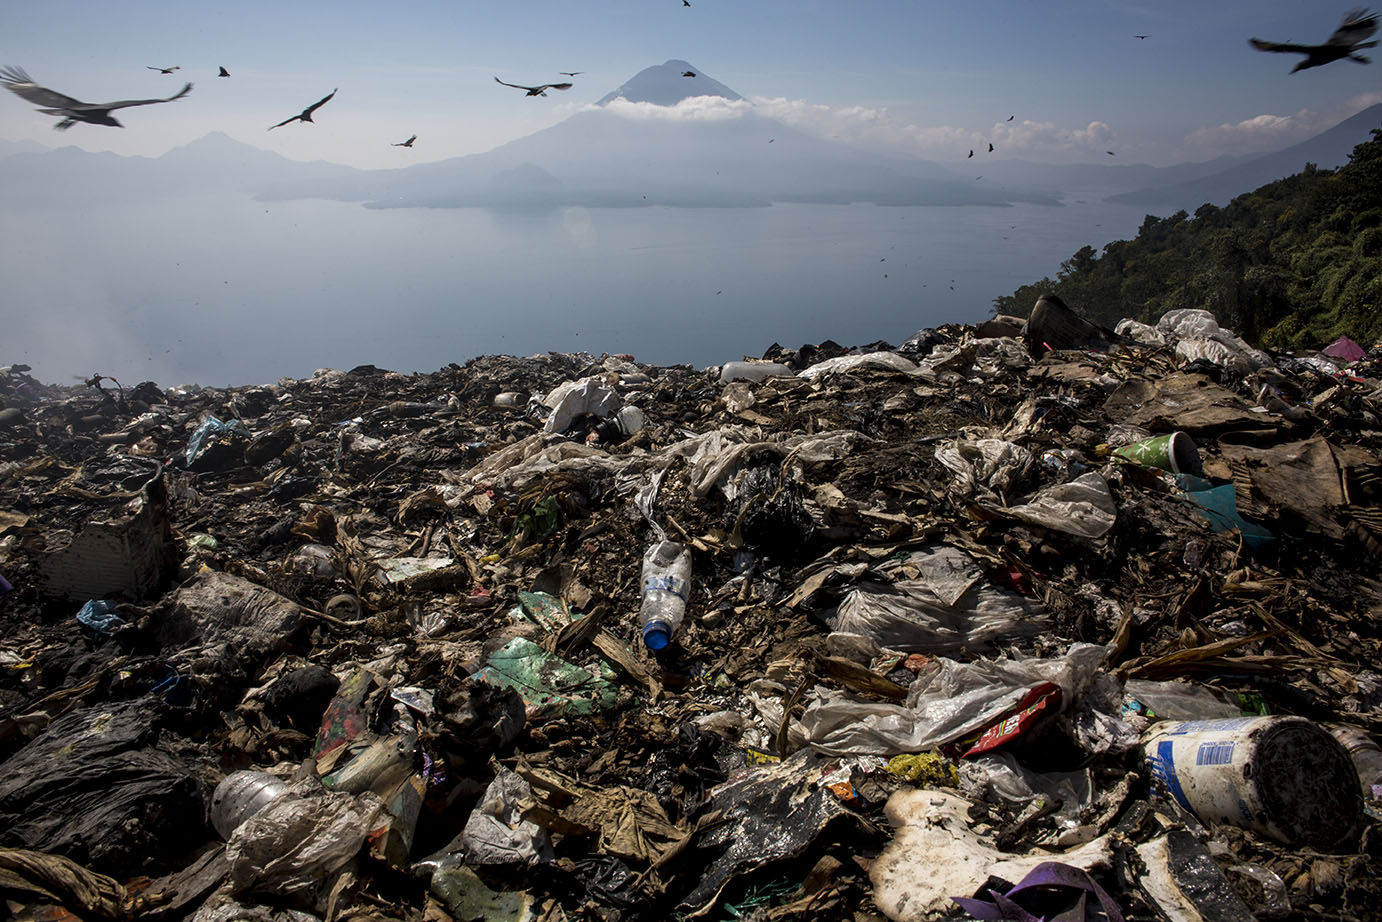 Vista de la cuenca del lago de Atitlán desde el basurero a cielo abierto del municipio de Sololá. Noviembre 2019. Simone Dalmasso